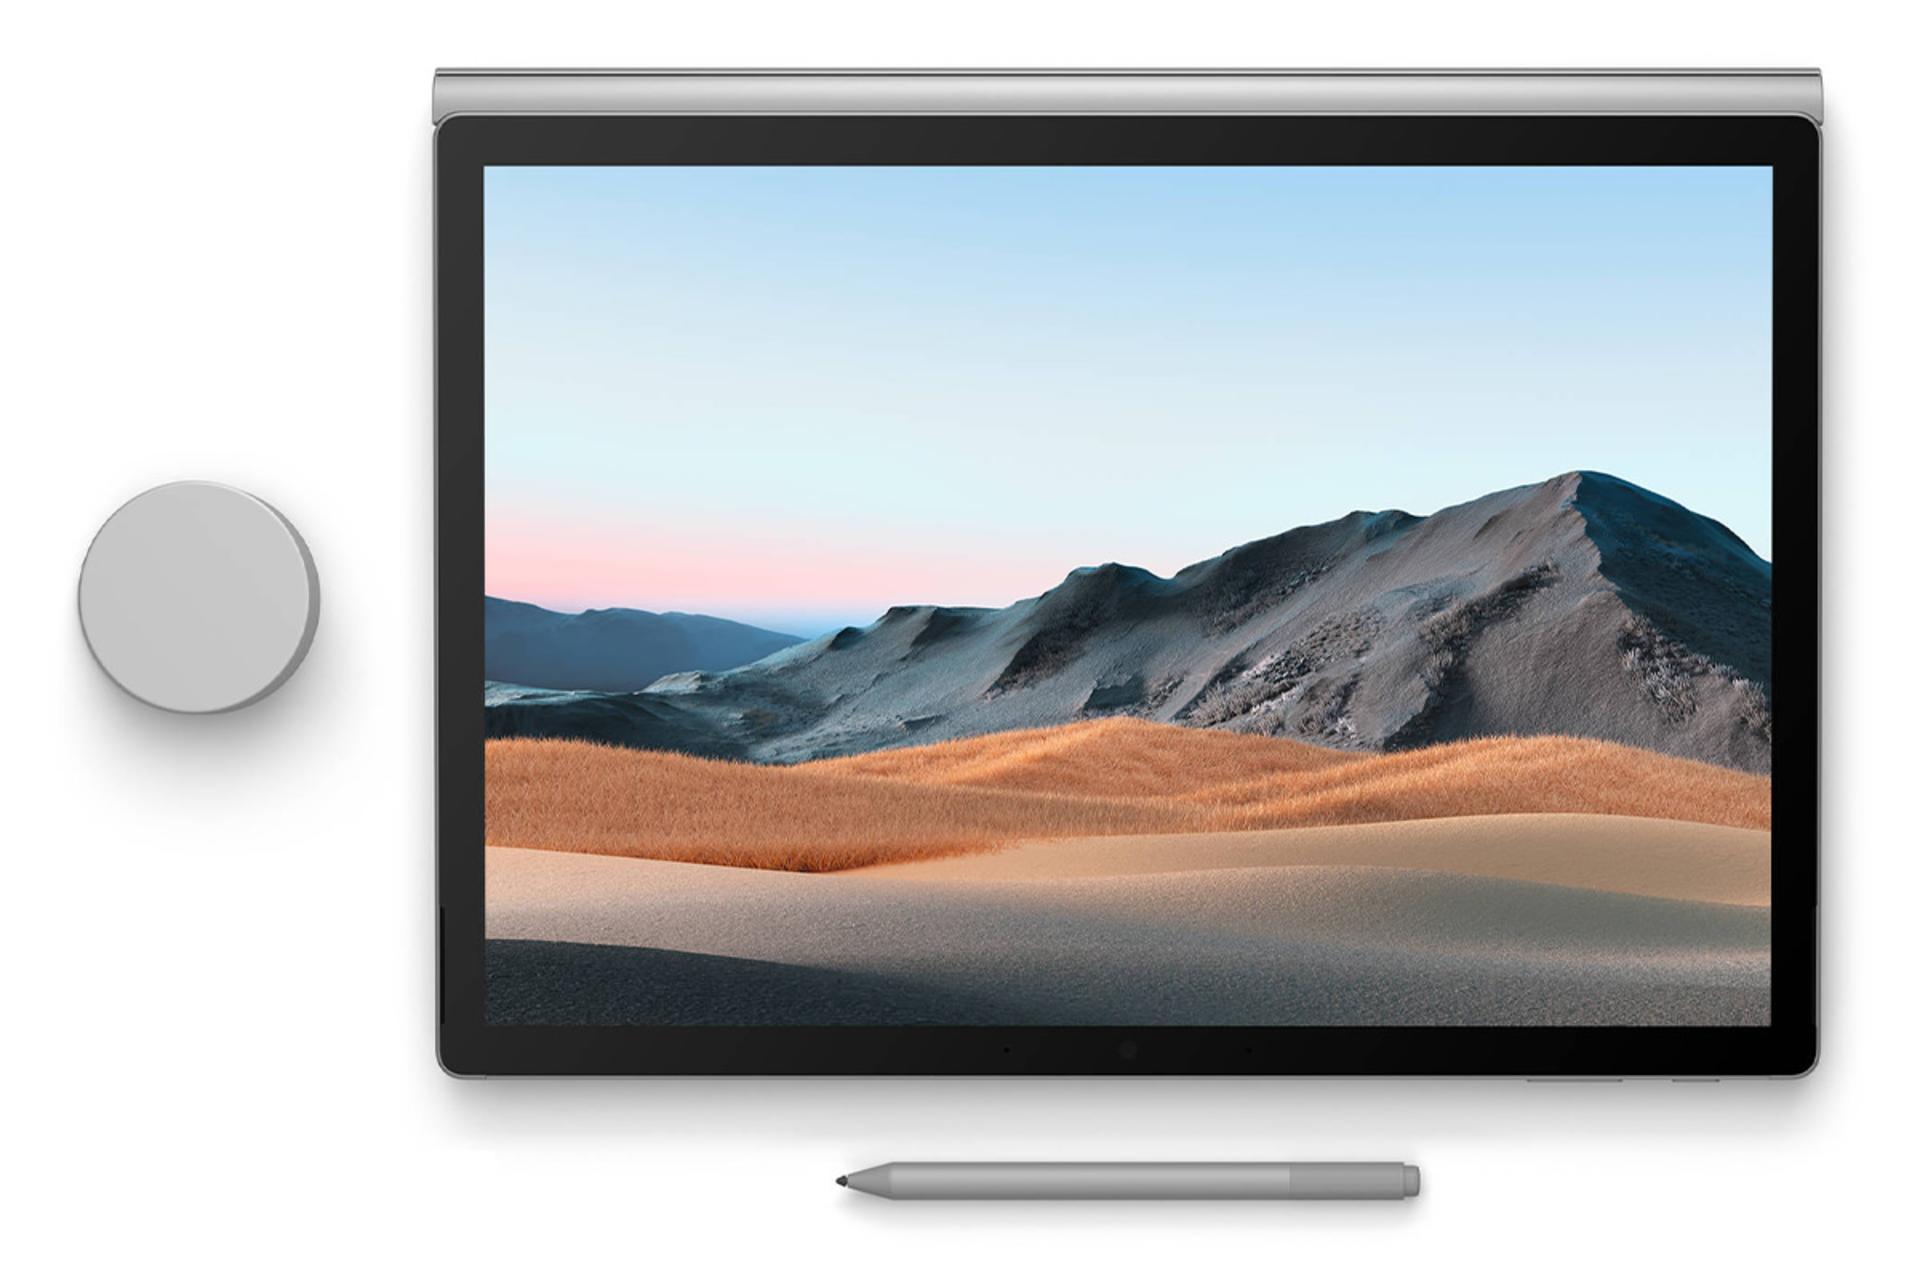 سرفیس بوک 3 مایکروسافت - Core i5-1035G7 Iris Plus 8GB 256GB / Microsoft Surface Book 3